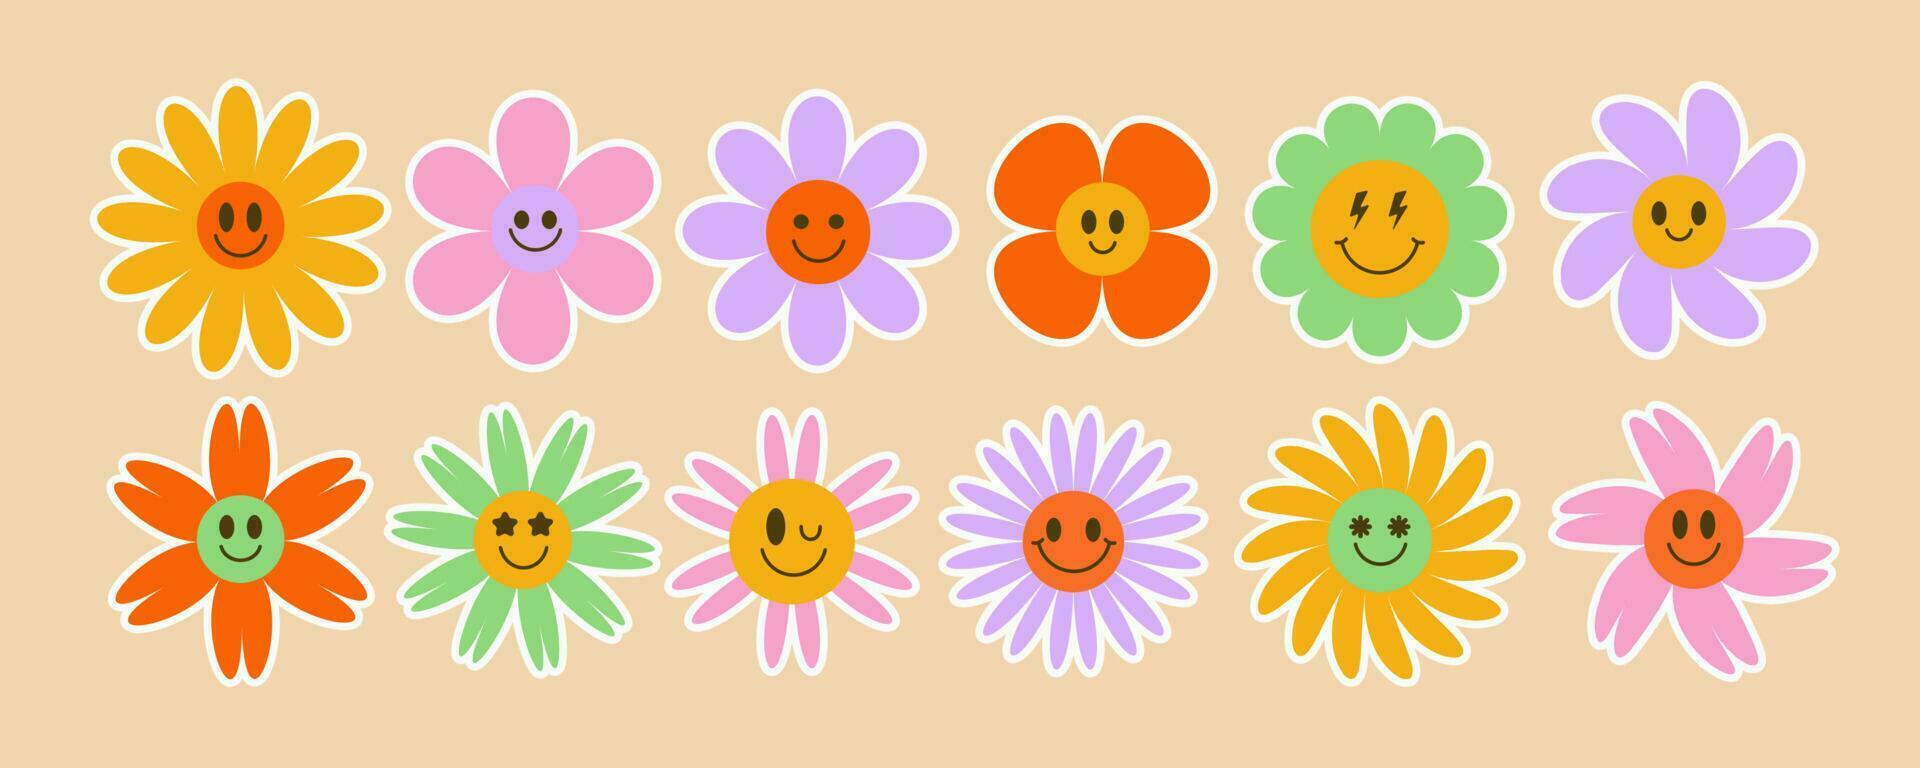 margarita maravilloso flores sonriente retro floral caras. y2k sencillo diseño. dibujos animados manzanilla personaje. de moda vector ilustración.